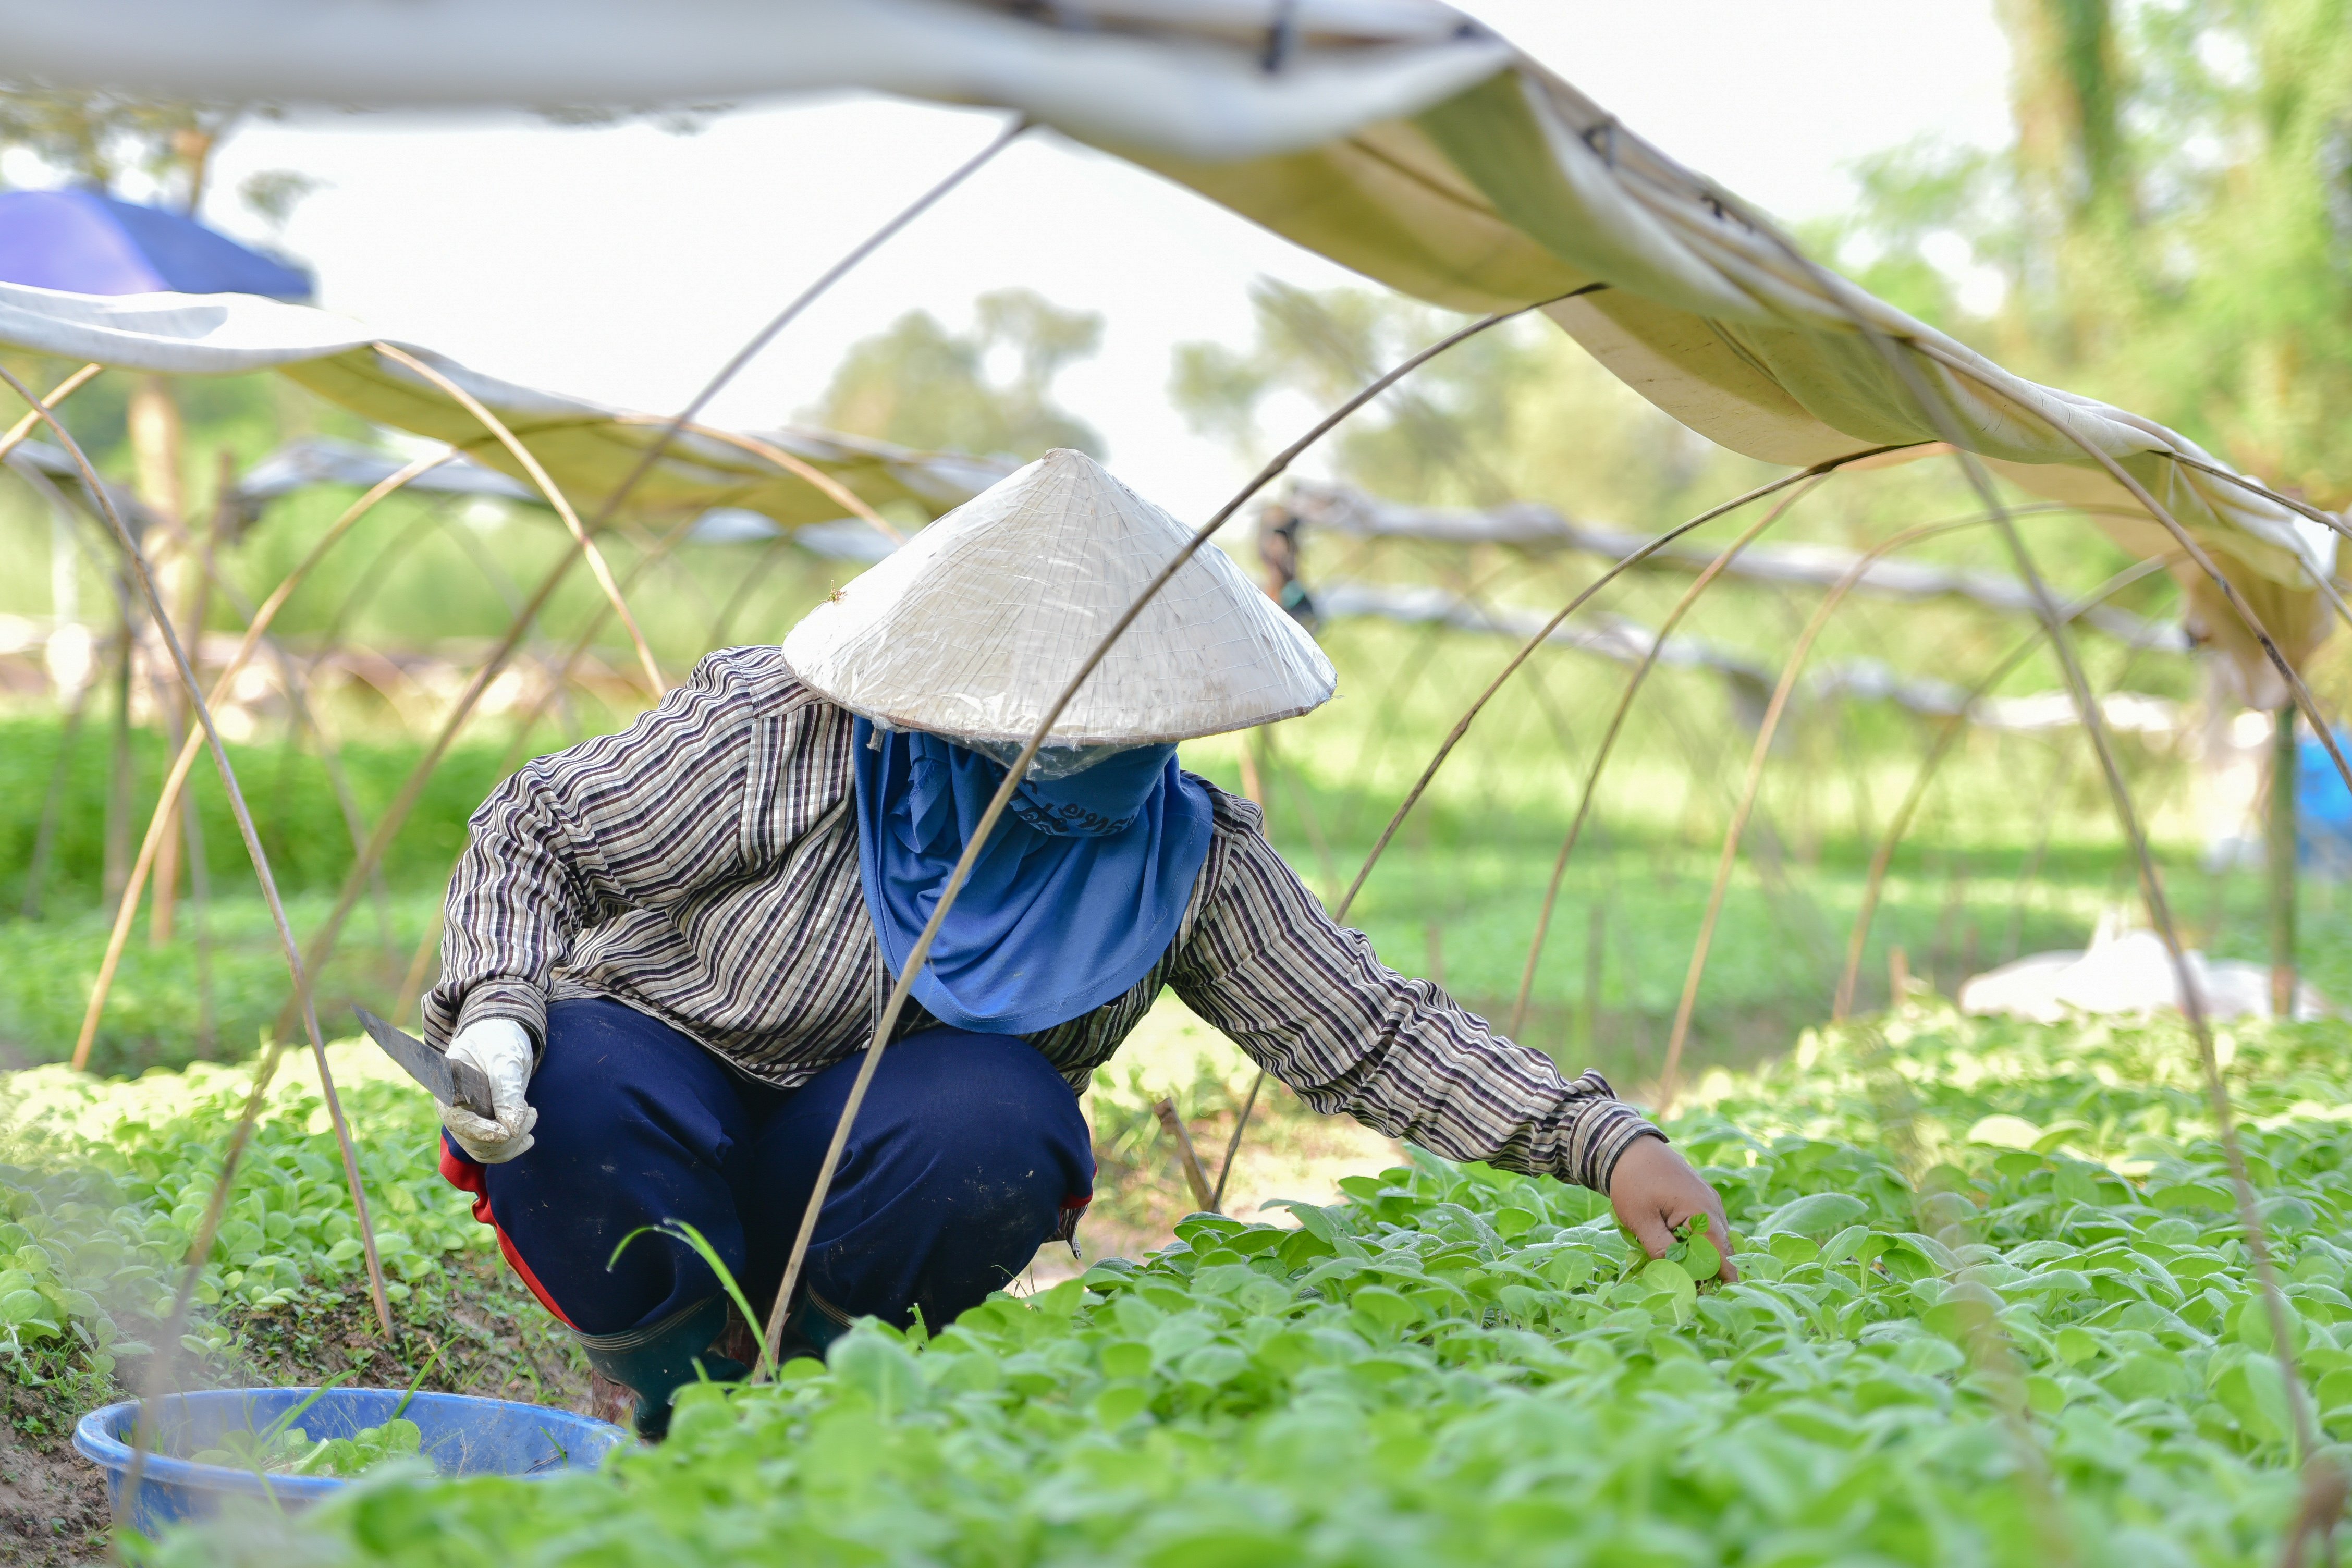 คำตอบจากเกษตรกรรุ่นใหม่ ทำเกษตรอินทรีย์แล้วดีอย่างไร? thaihealth